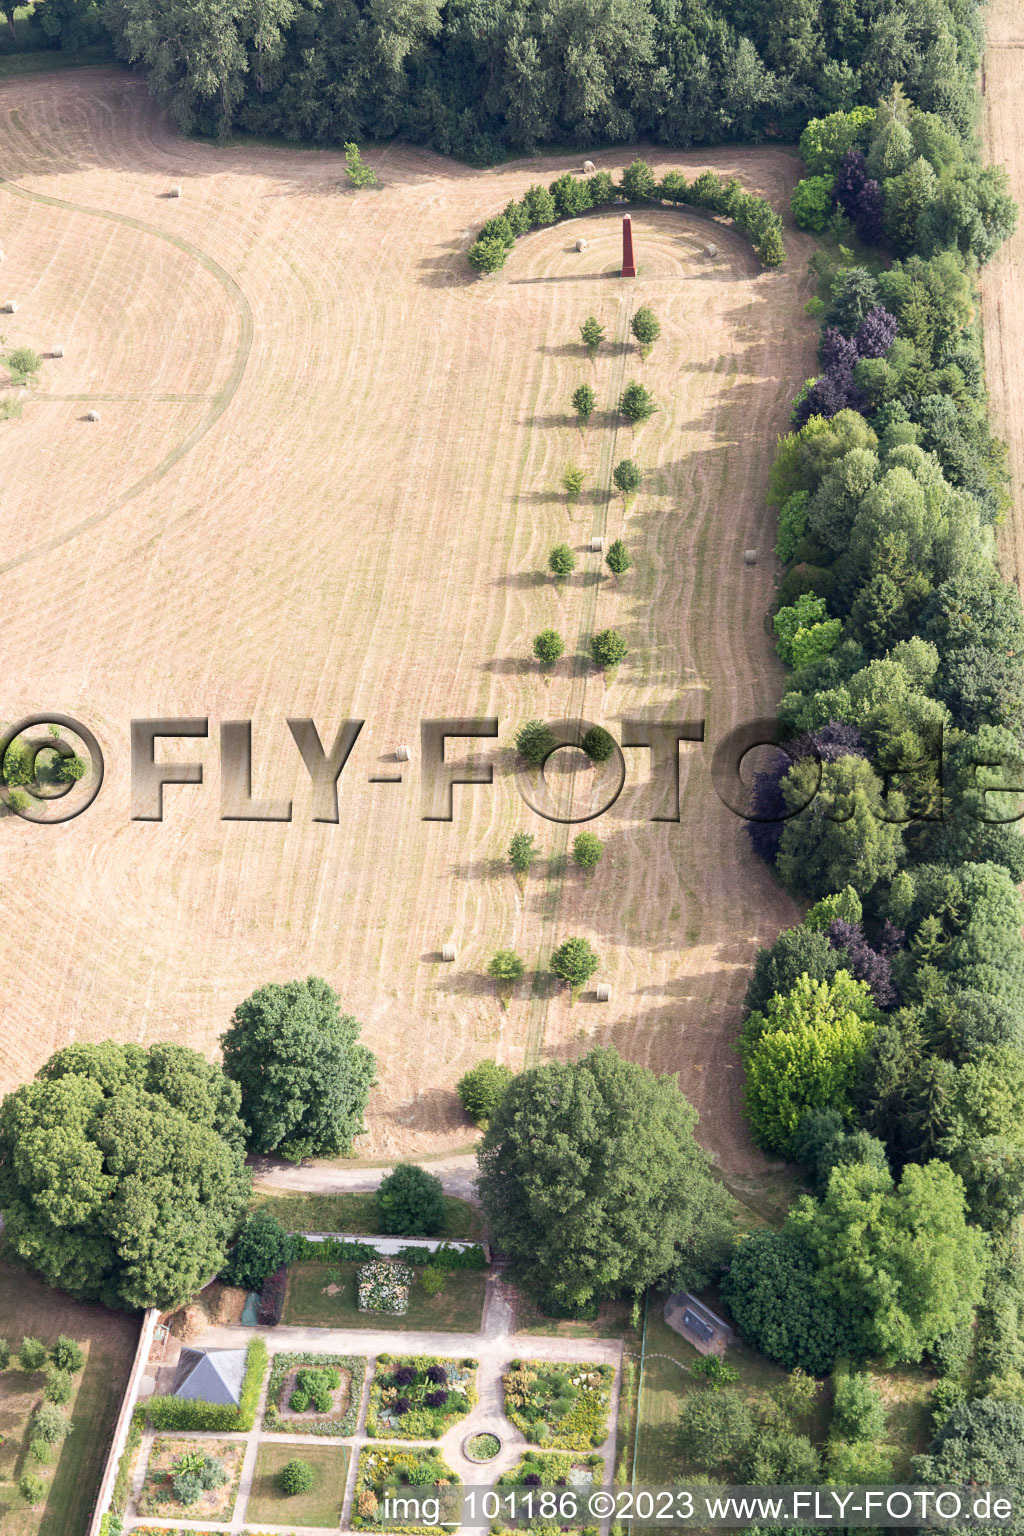 Saint-Cyr-du-Gault im Bundesland Loir-et-Cher, Frankreich aus der Luft betrachtet